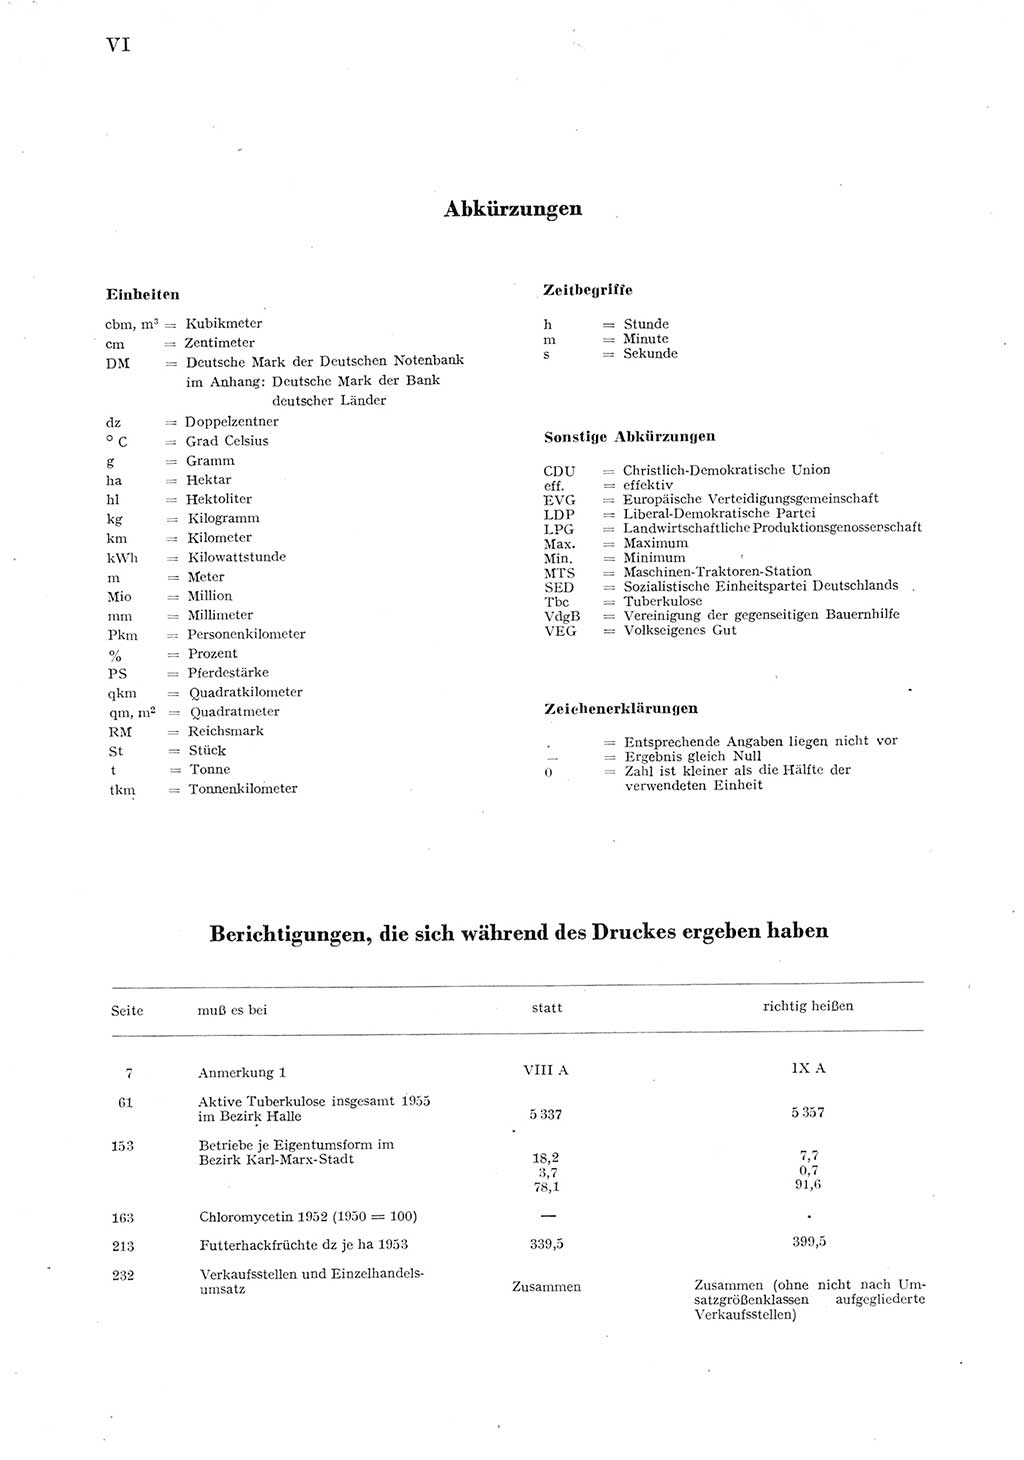 Statistisches Jahrbuch der Deutschen Demokratischen Republik (DDR) 1955, Seite 6 (Stat. Jb. DDR 1955, S. 6)